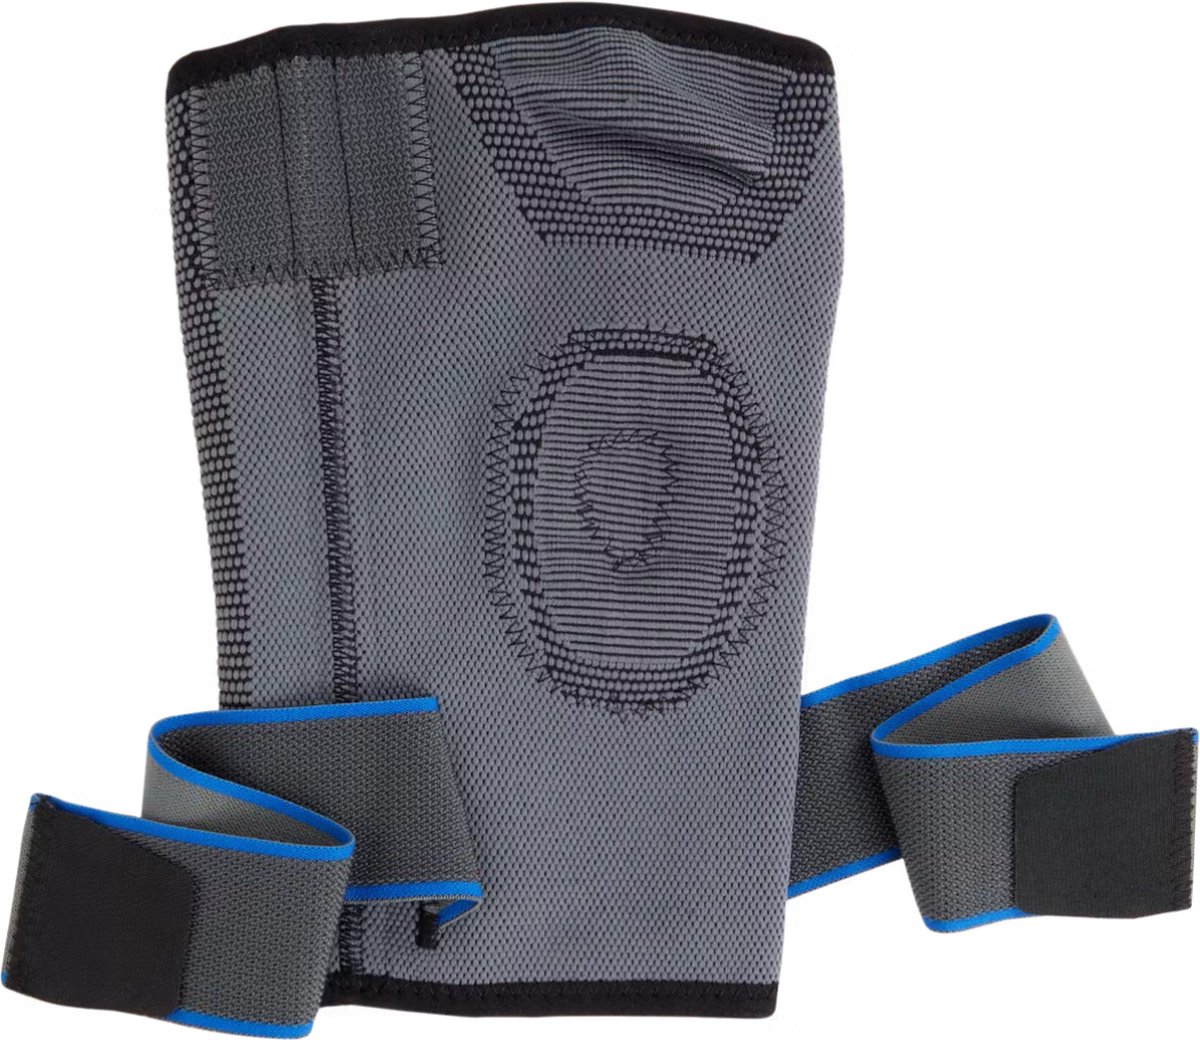 Premium Kniebrace Maat L/XL - Verstelbare Kniestabilisator voor Optimaal Comfort en Ondersteuning - Geschikt voor Sport, Herstel en Dagelijks Gebruik - Ademende en Duurzame Knieband - Kniebandage